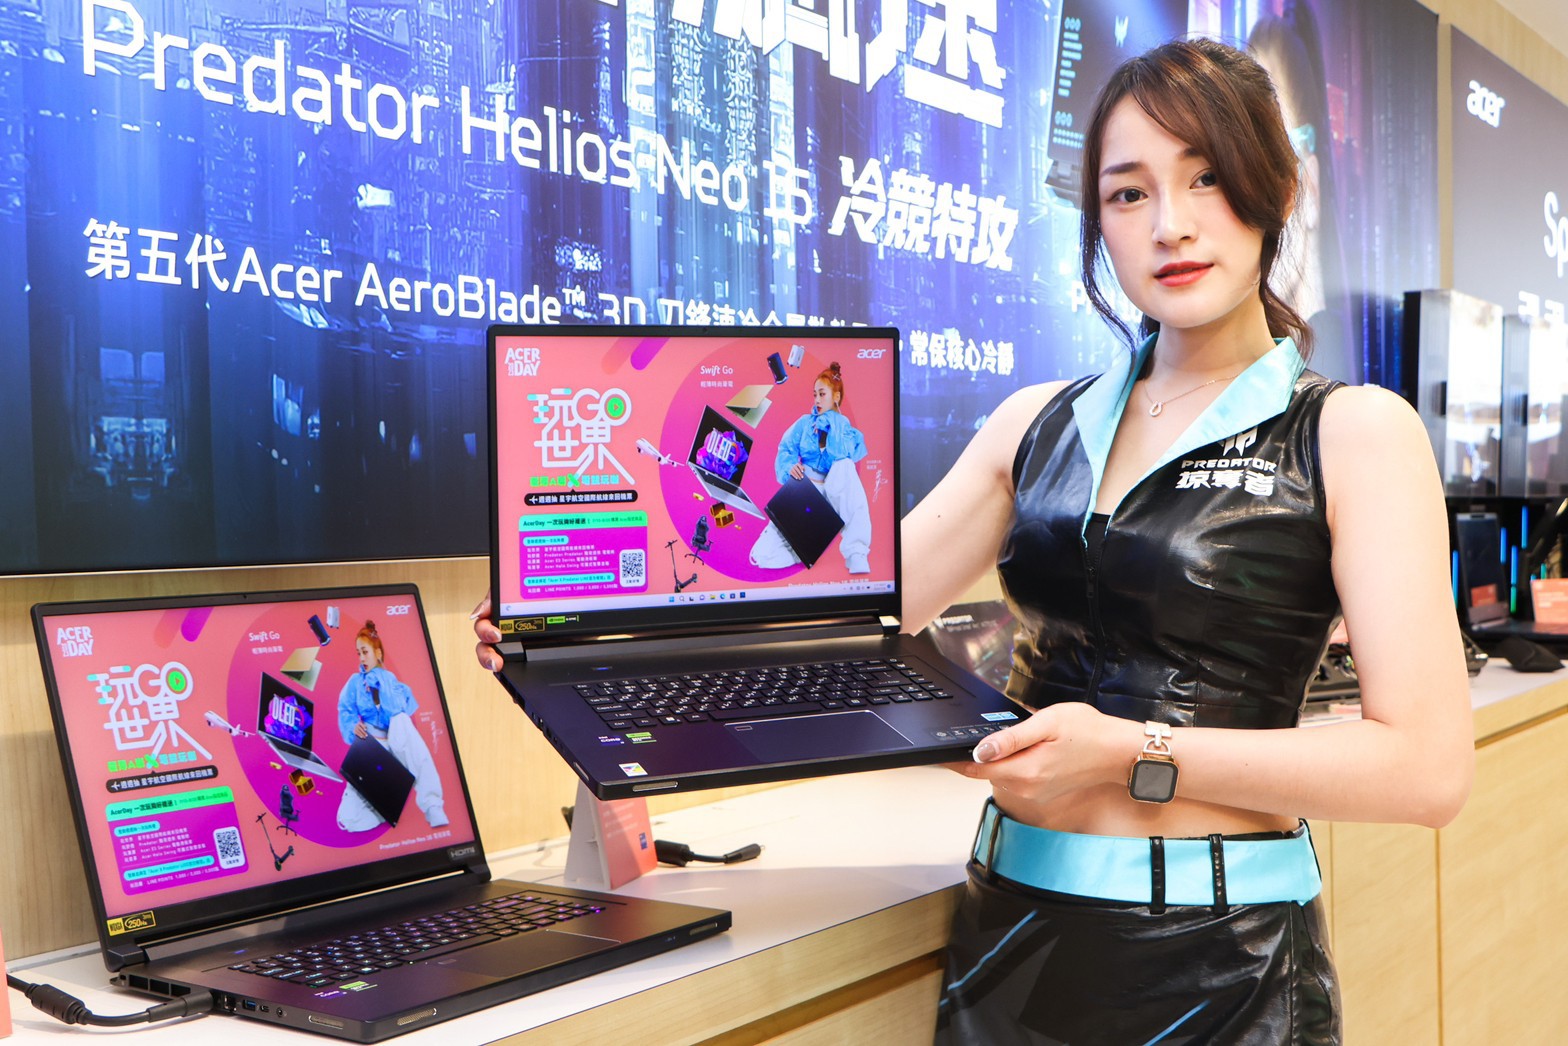 宏碁<u>Acer</u> Day開跑 Predator 17吋旗艦電競筆電輕薄強悍